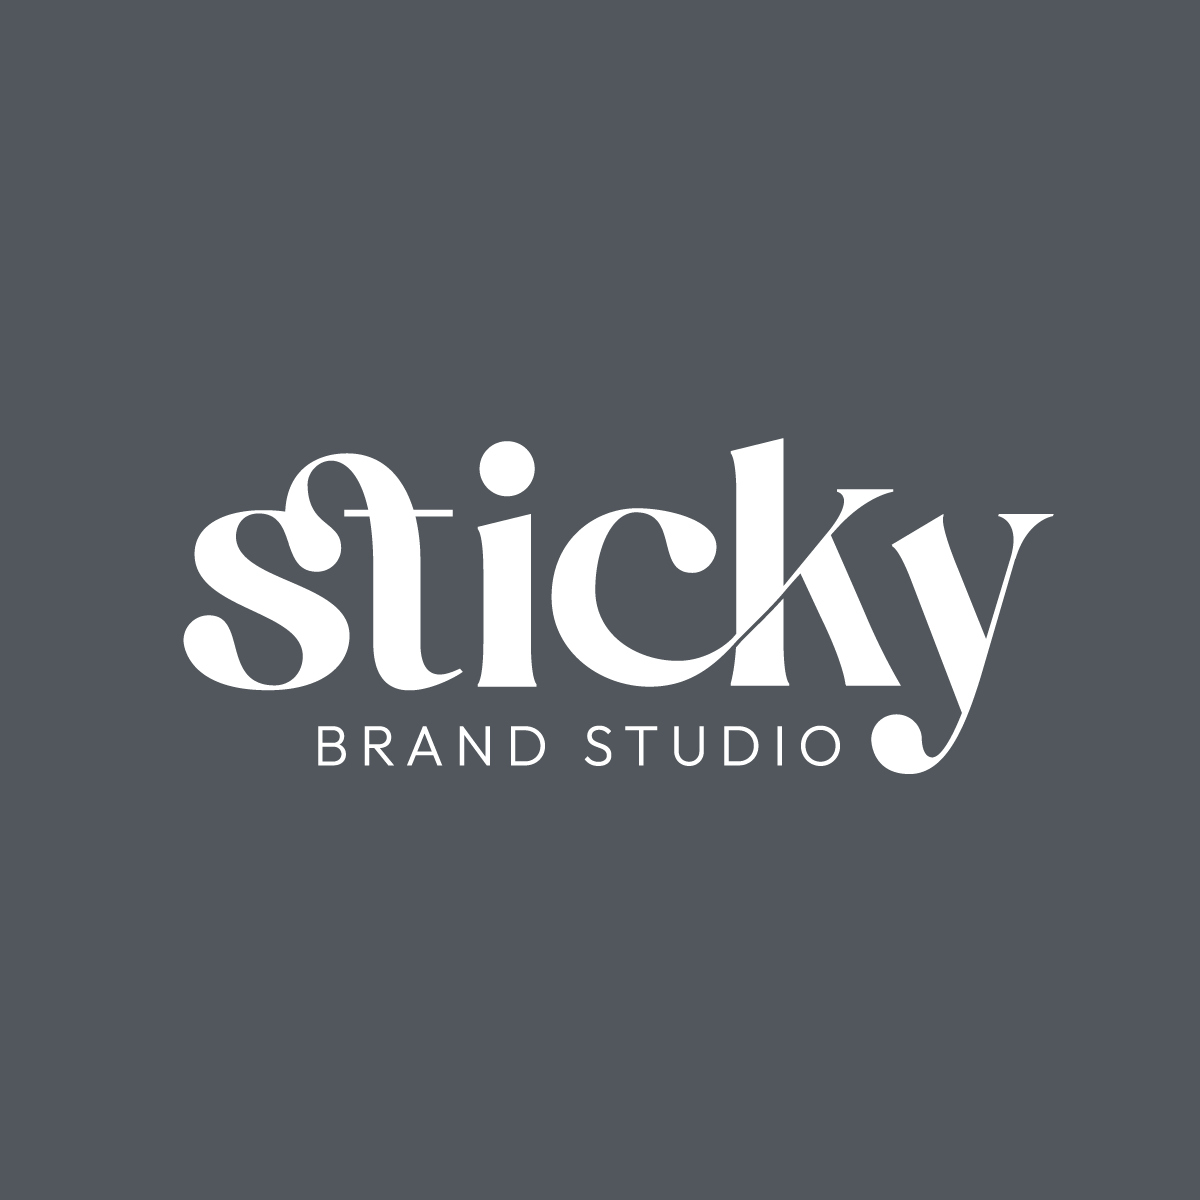 Sticky Brand Studio LLC